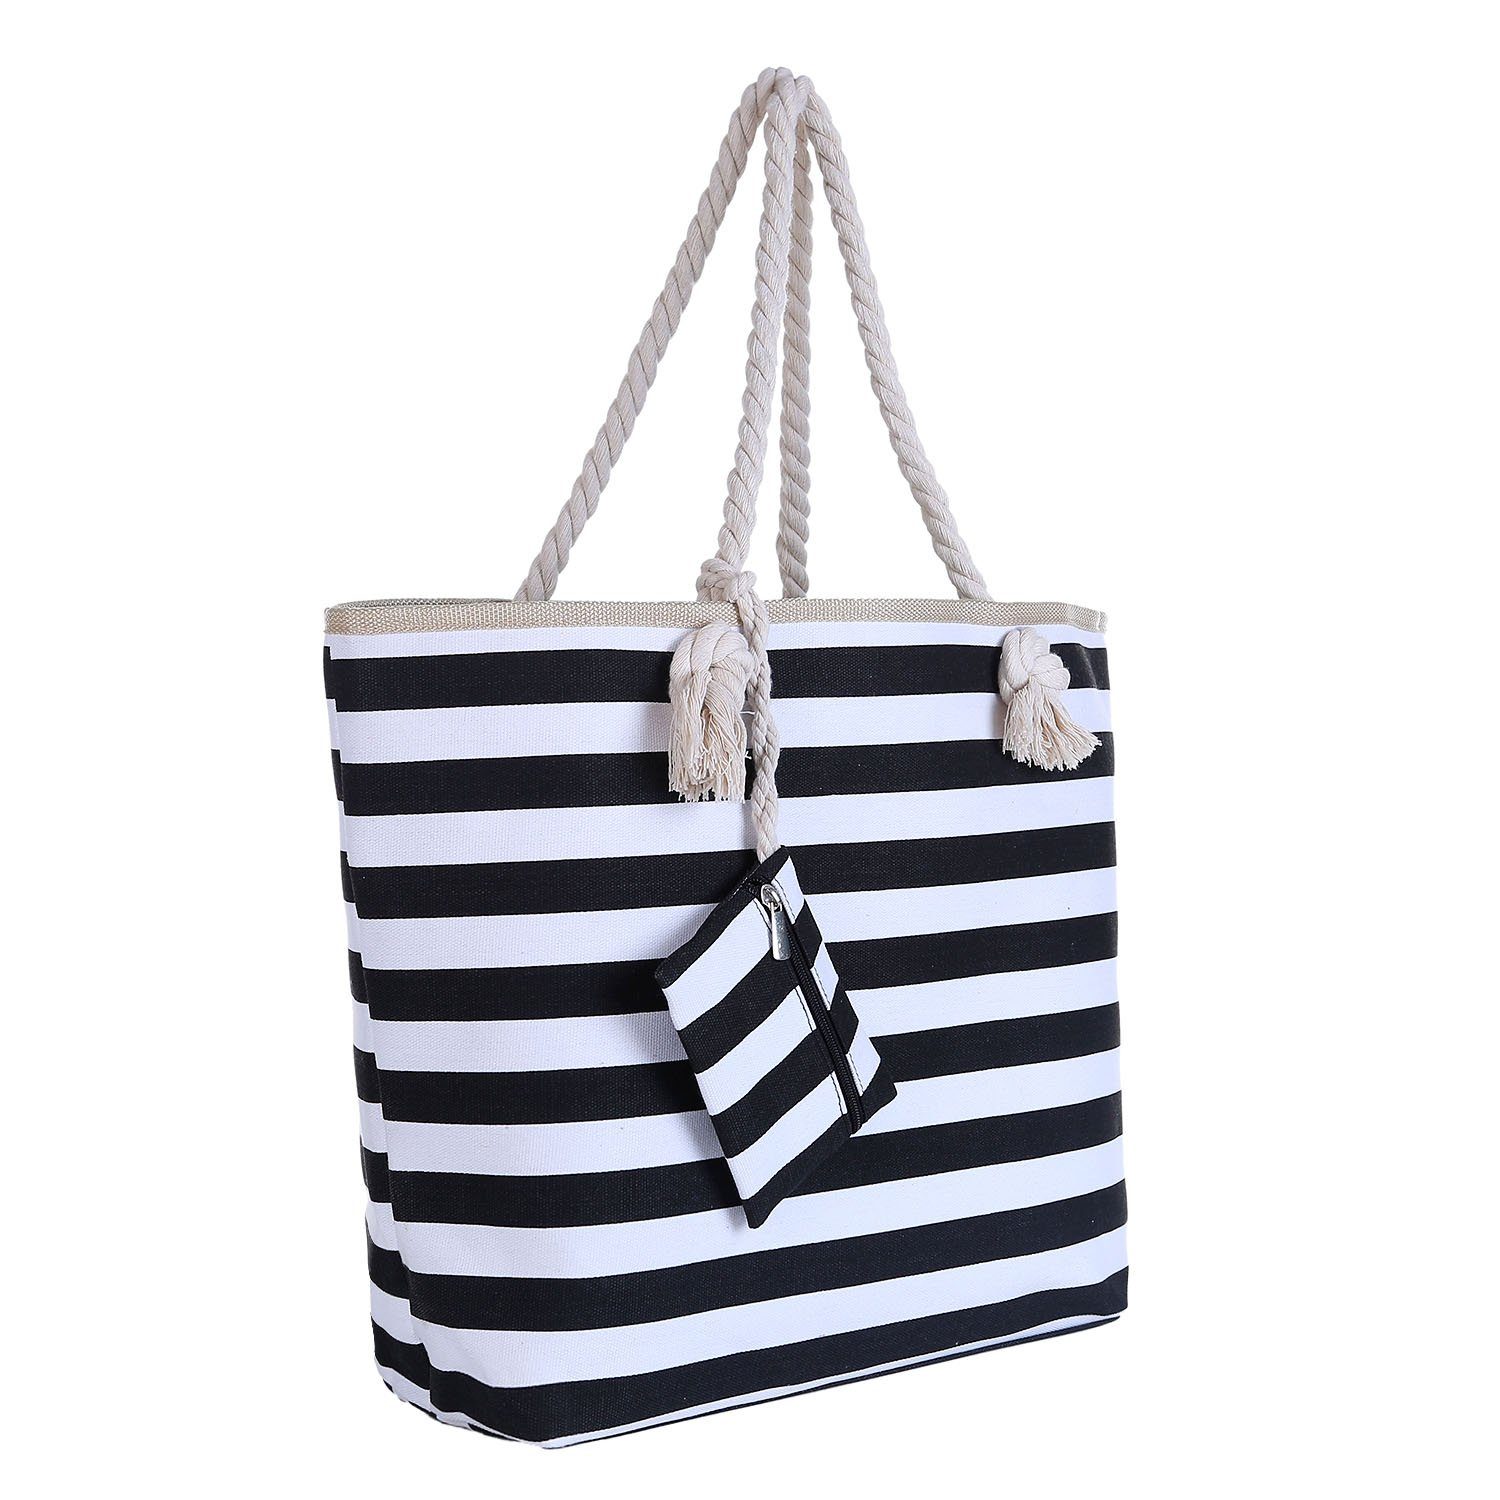 Große Strandtasche mit Reißverschluss 58 x 38 x 18 cm Federn schwarz beige Shopper Schultertasche Beach Style 